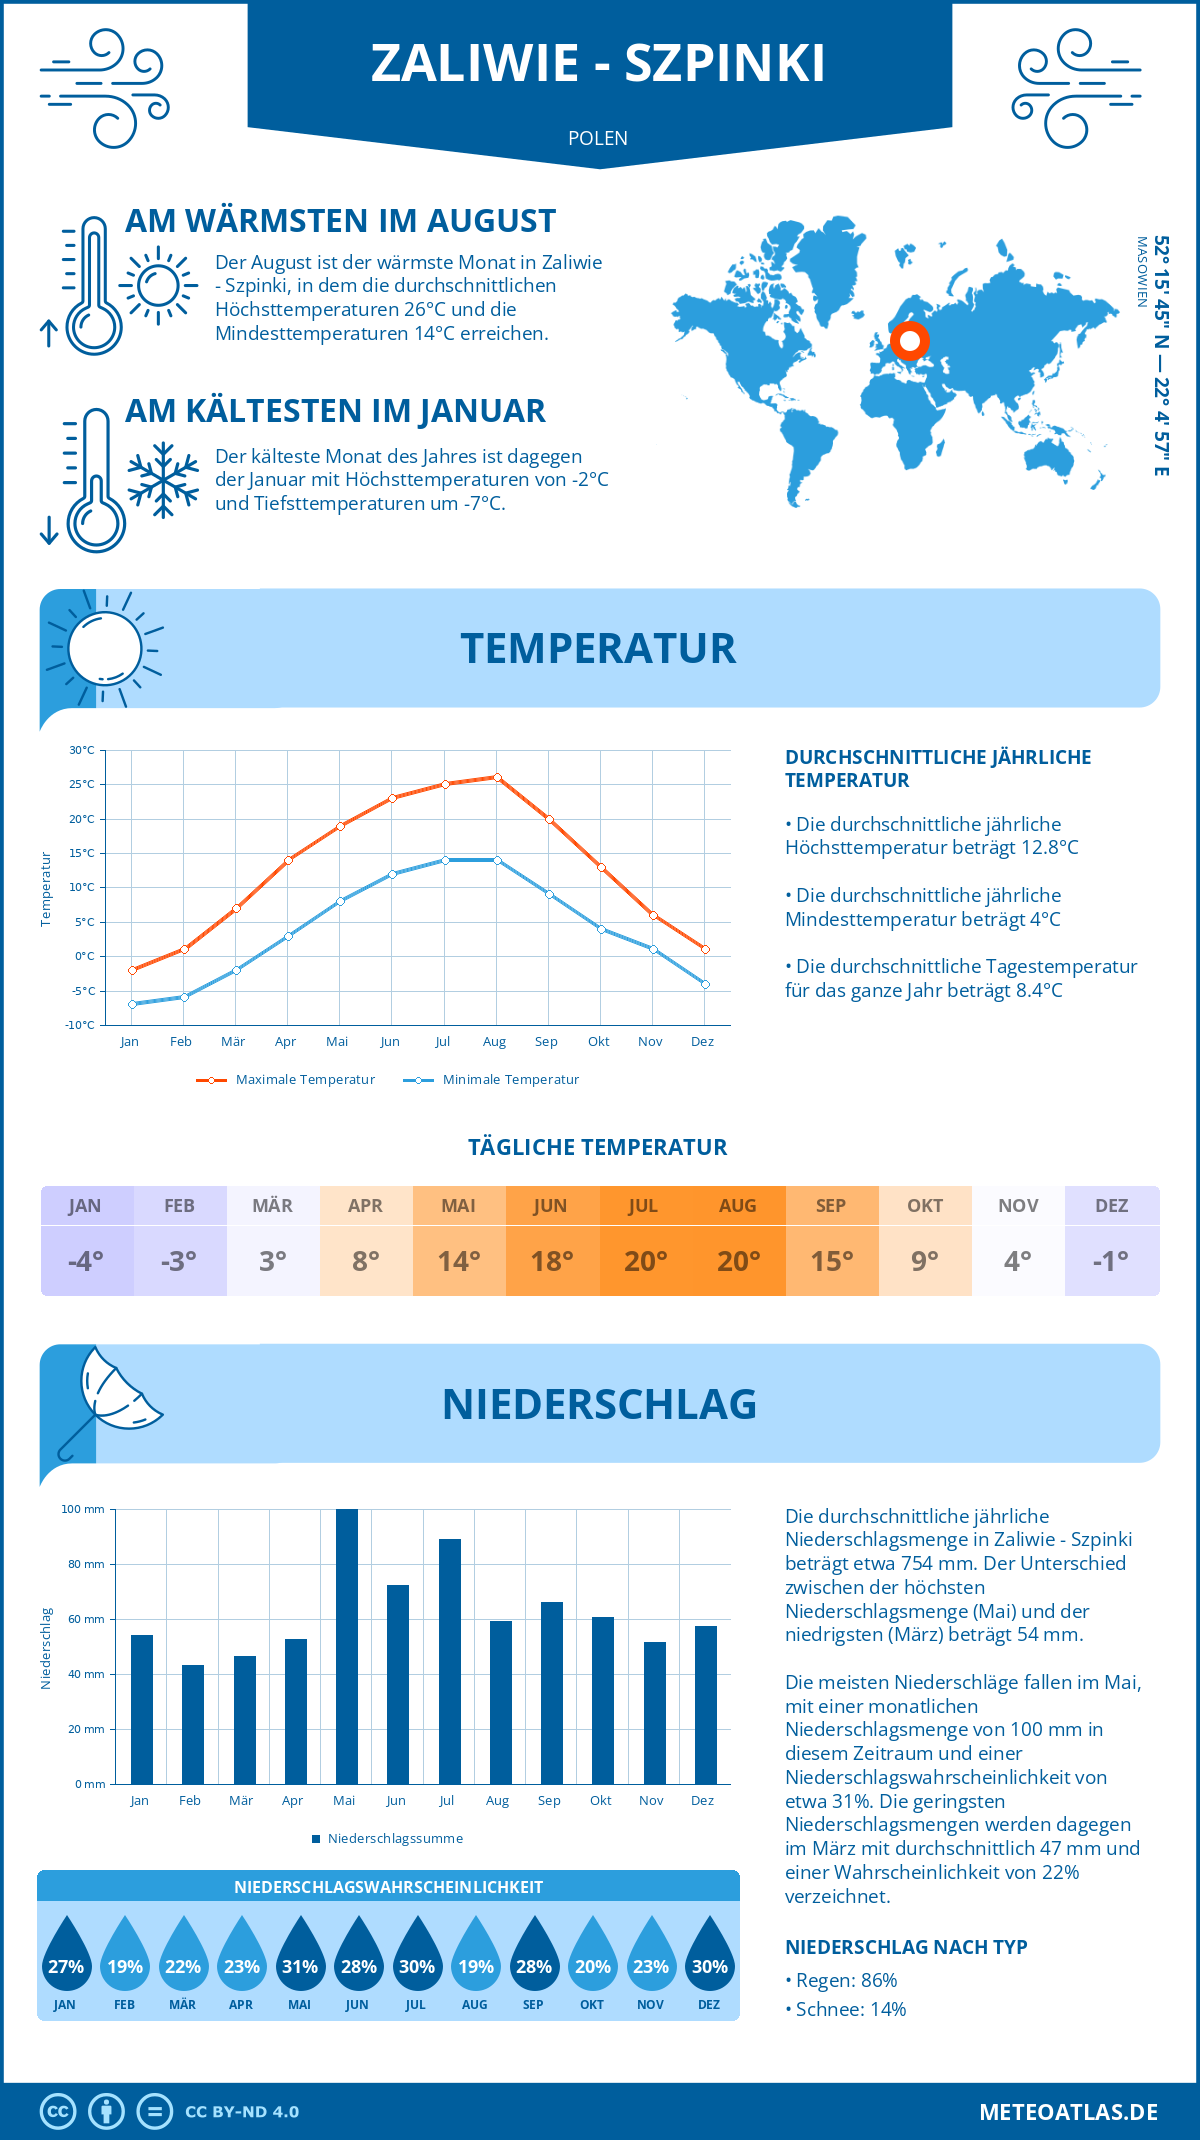 Wetter Zaliwie - Szpinki (Polen) - Temperatur und Niederschlag